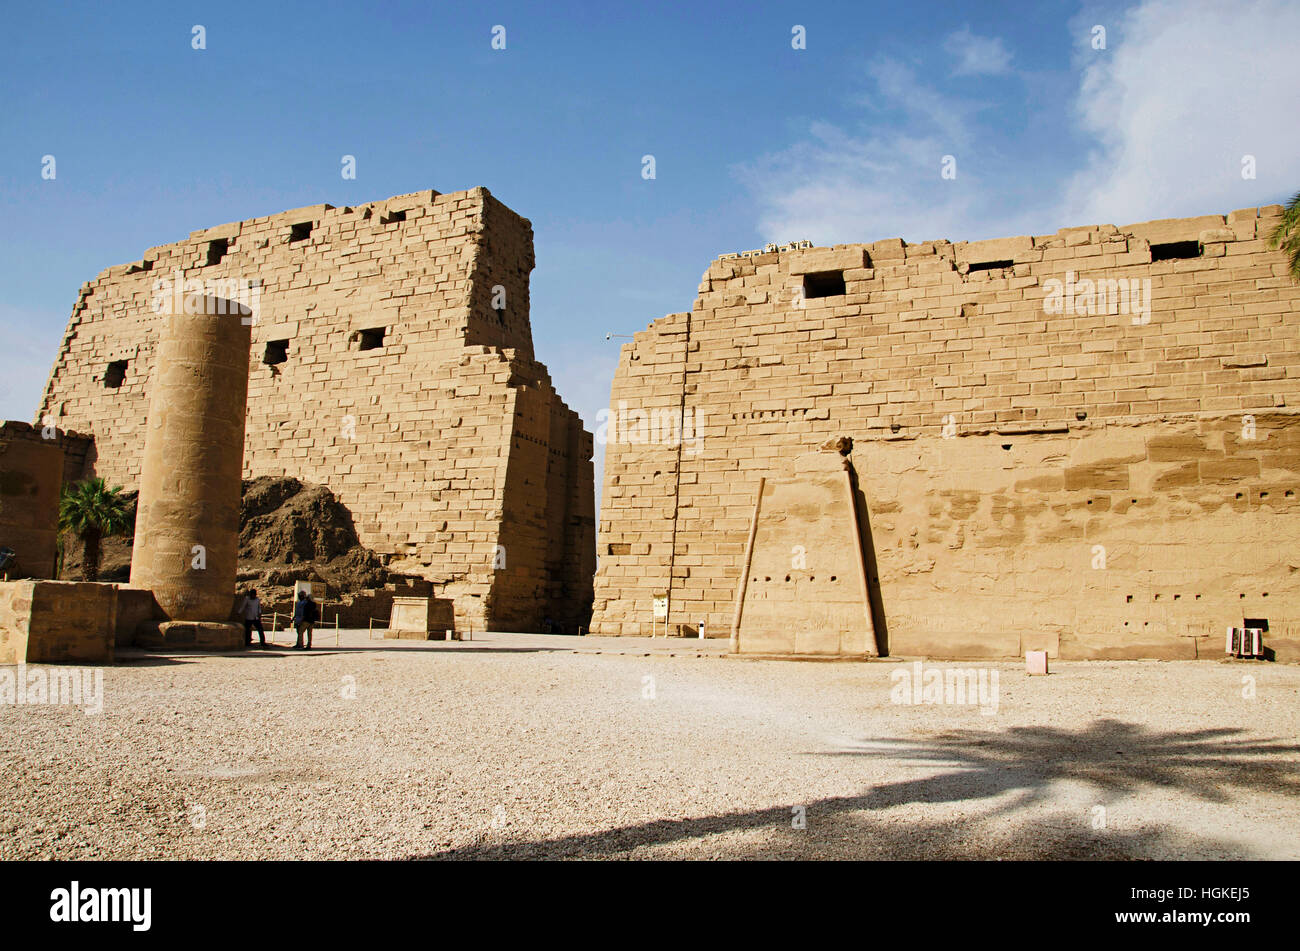 Vista interior del templo de Karnak, el complejo comprende una vasta variedad de dientes cariados templos, capillas, torres y otros edificios, Luxor, Egipto Foto de stock